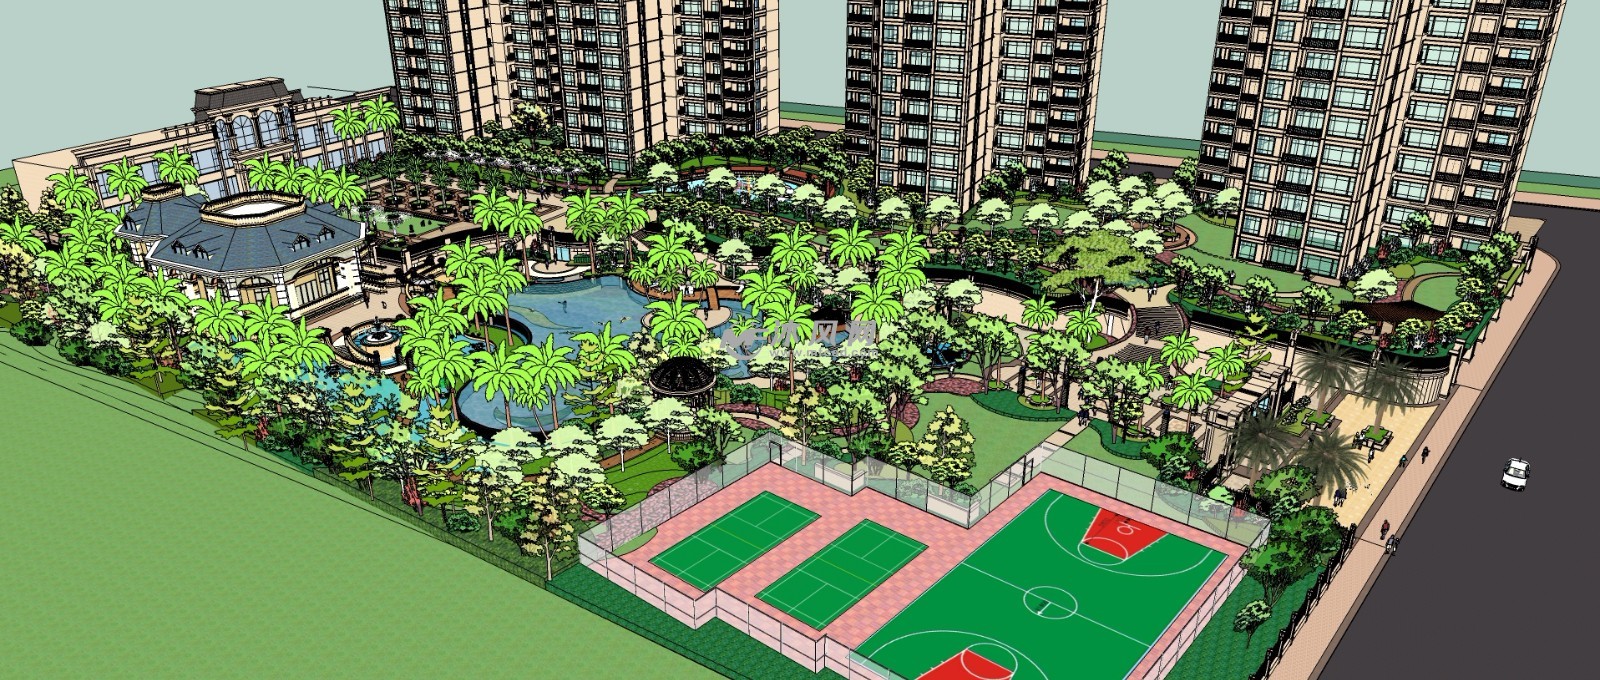 高层住宅小区公园广场带运动场规划设计三维模型